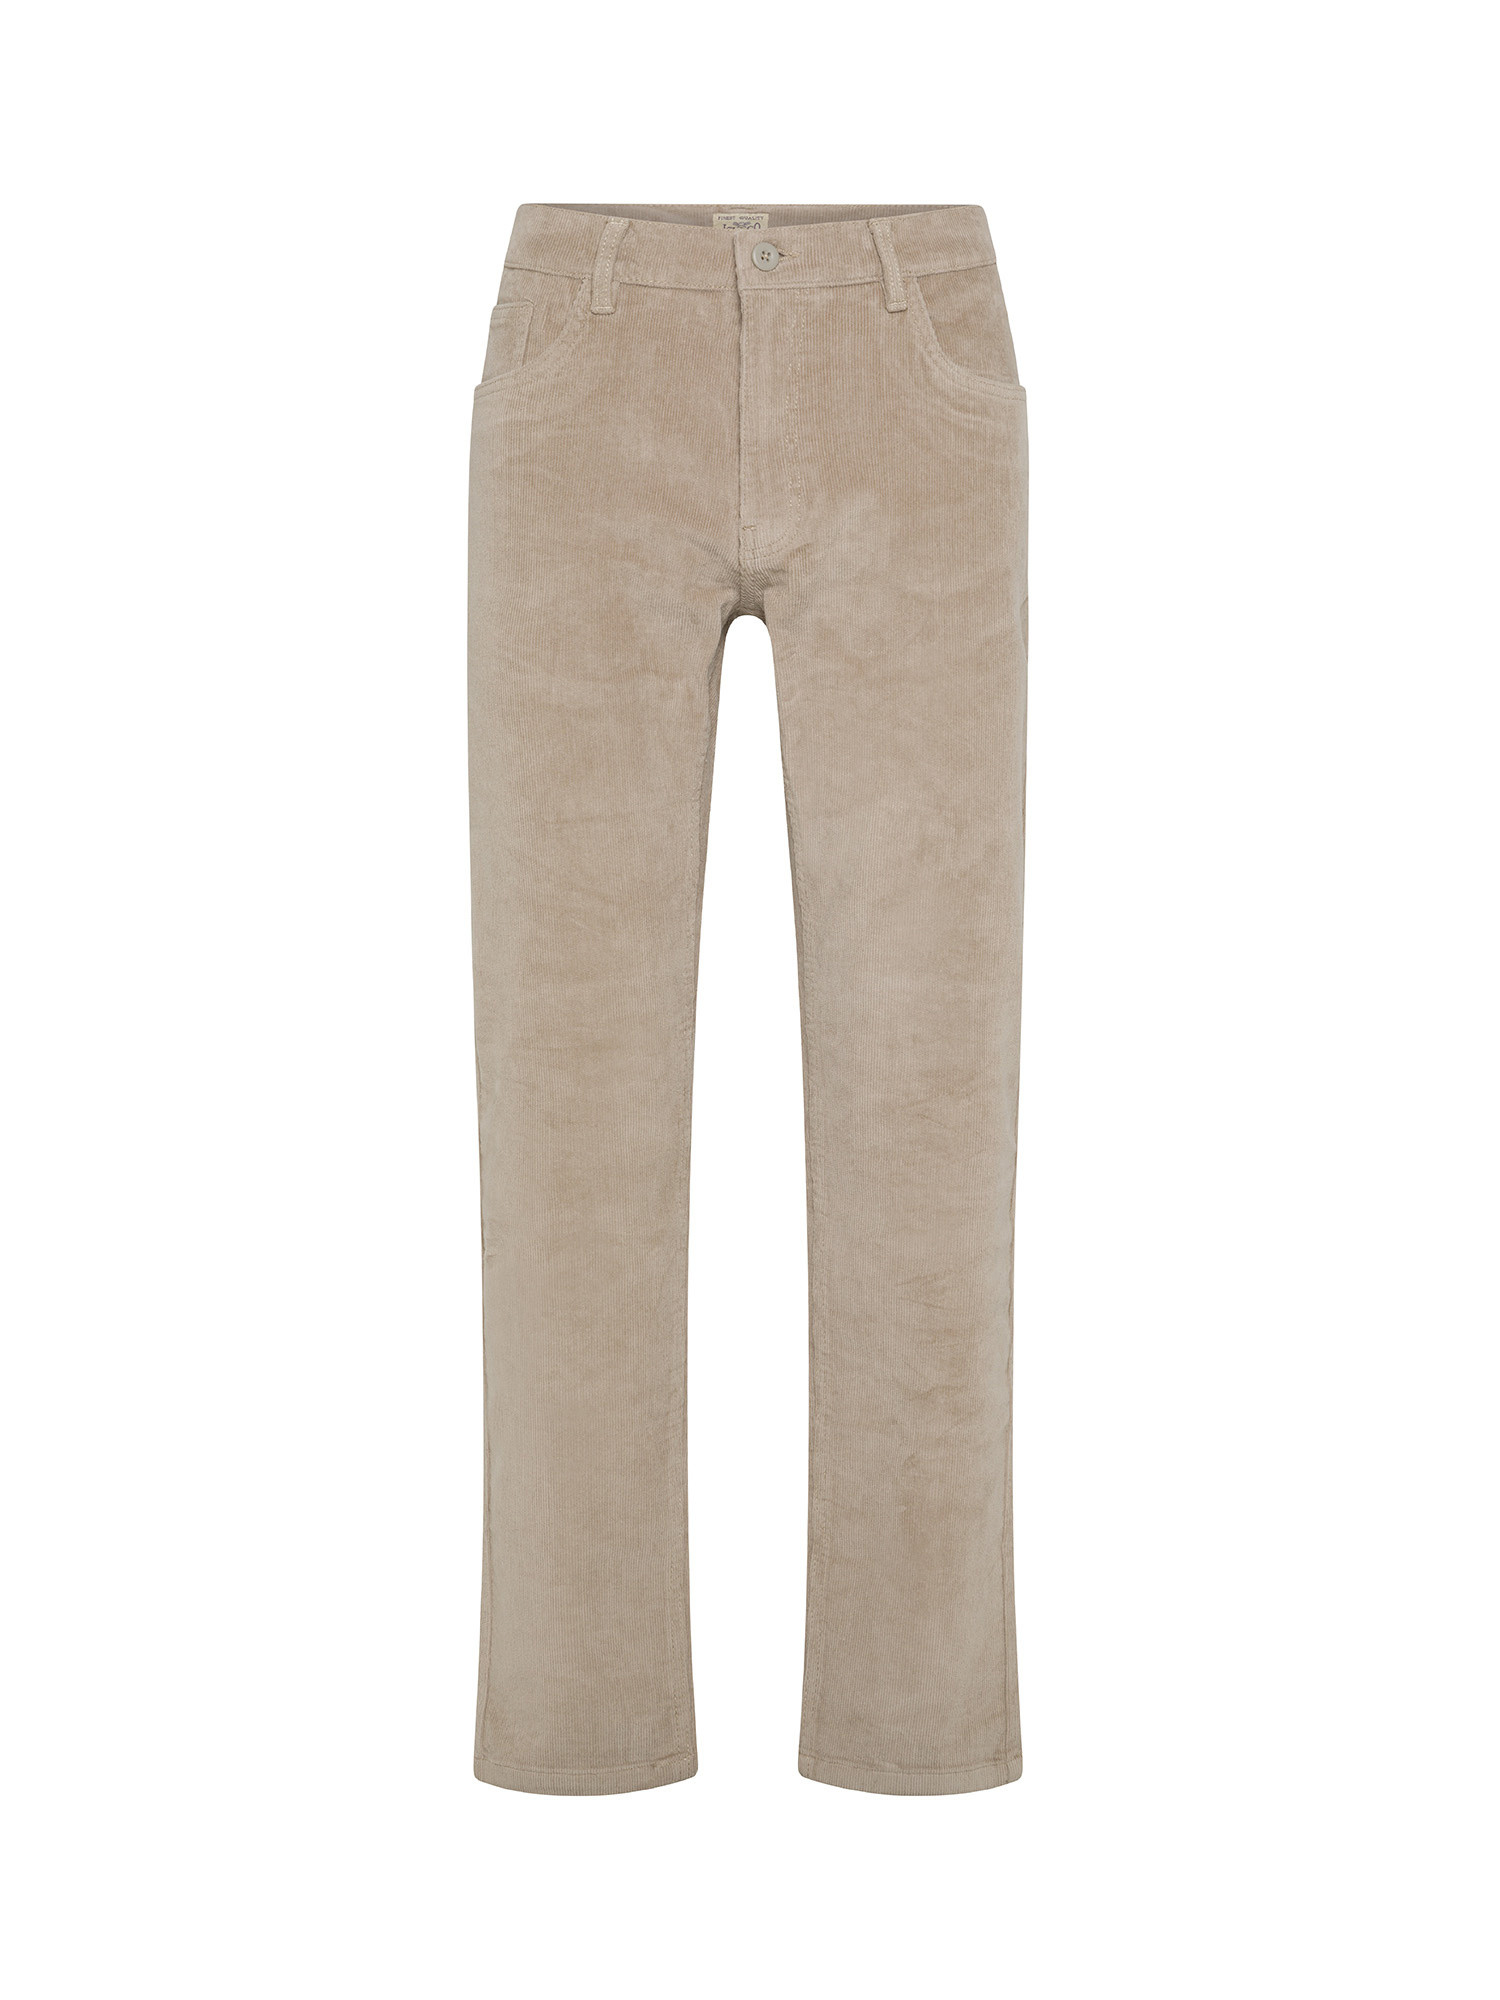 JCT - Slim fit five-pocket velvet trousers, Dove Grey, large image number 0